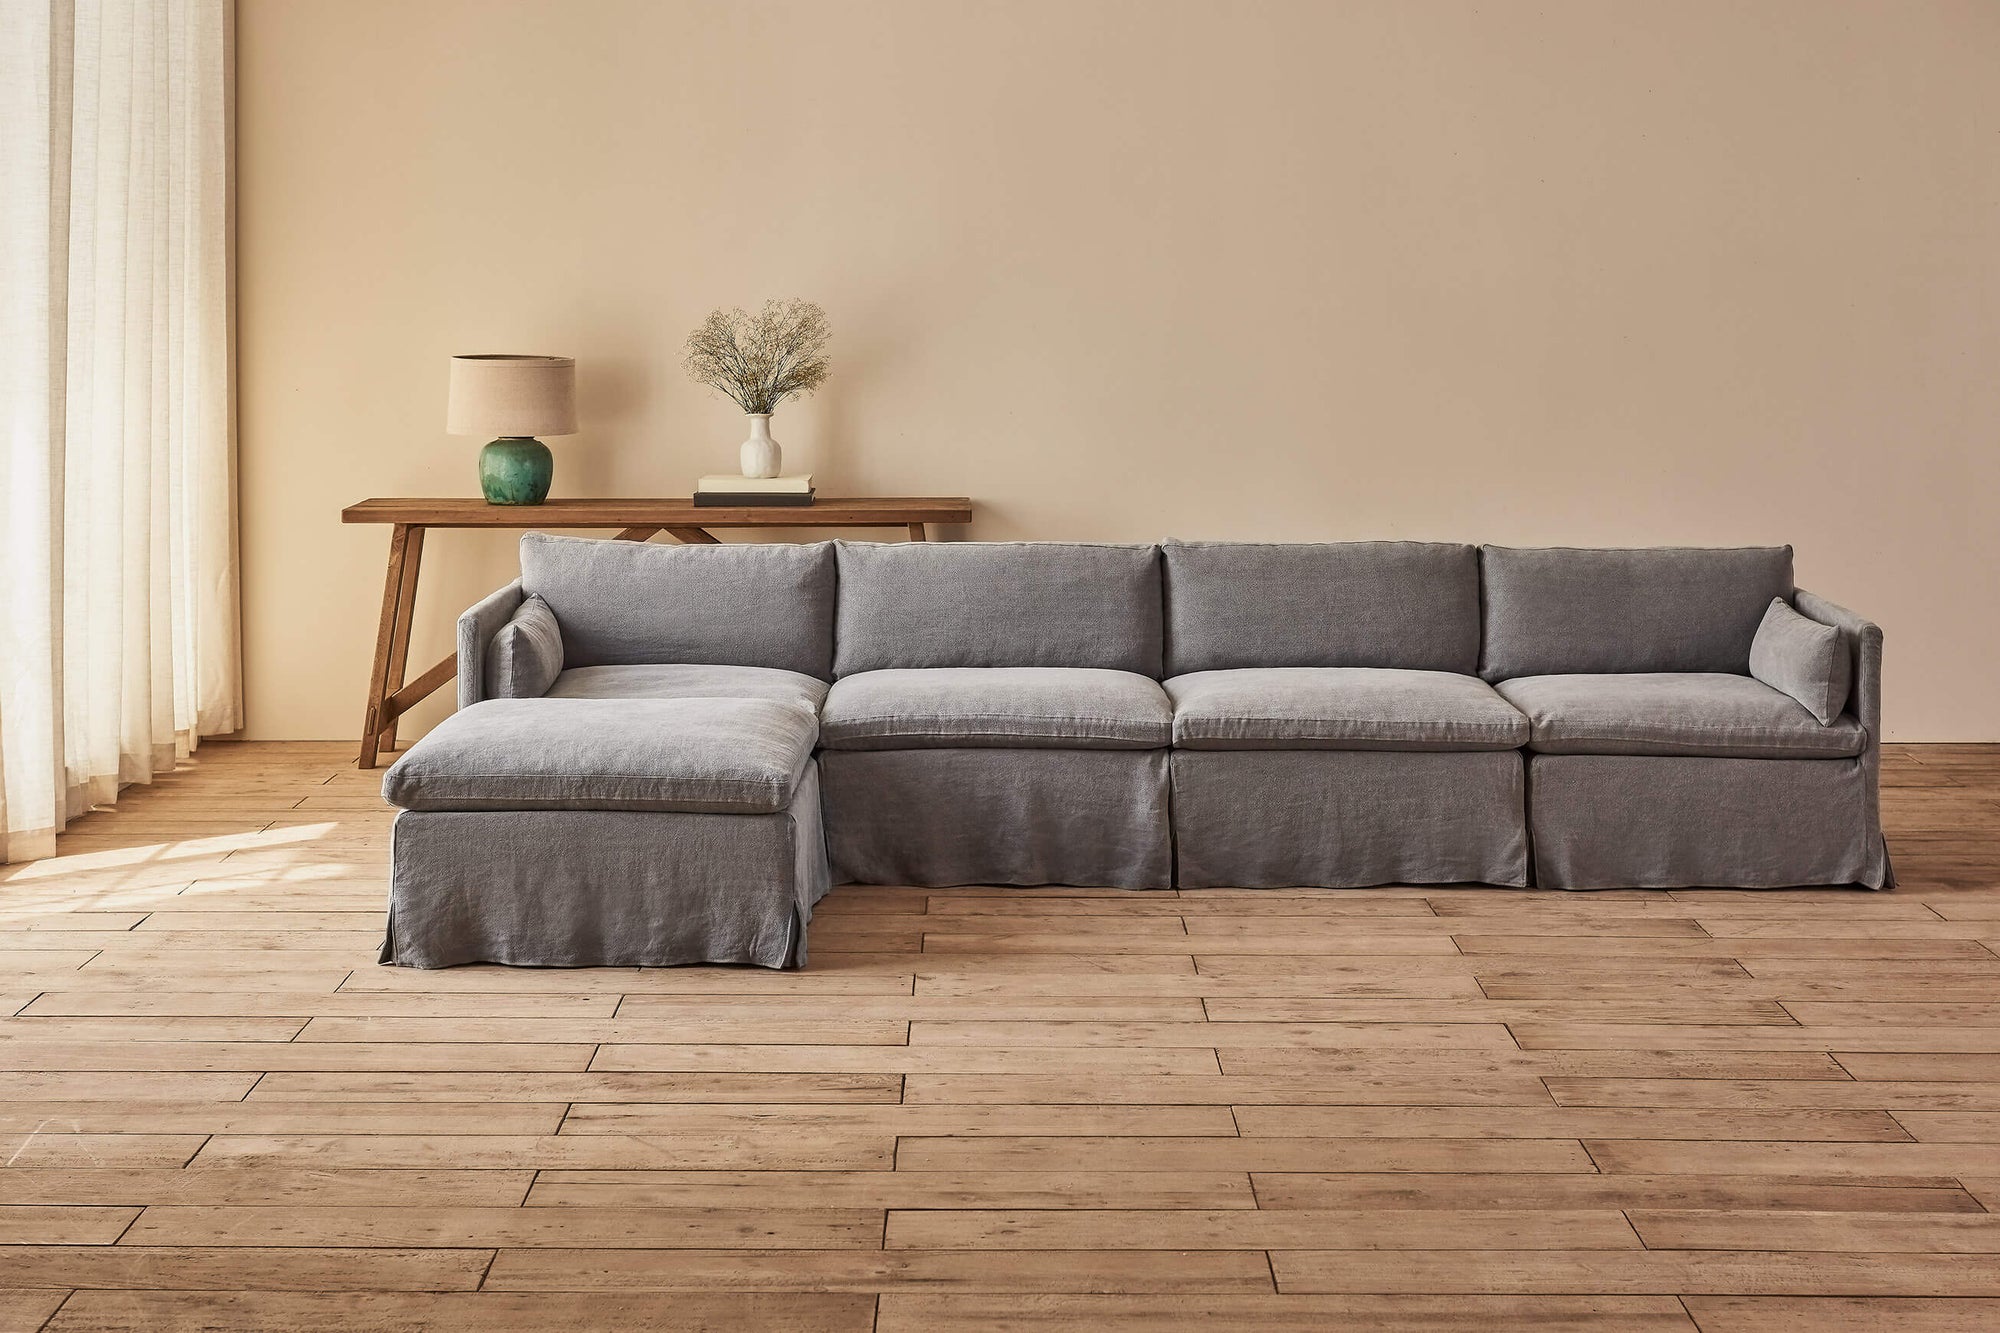 Gabriel 5-Piece Chaise Sectional Sofa in Ink Cap, a medium cool grey Light Weight Linen